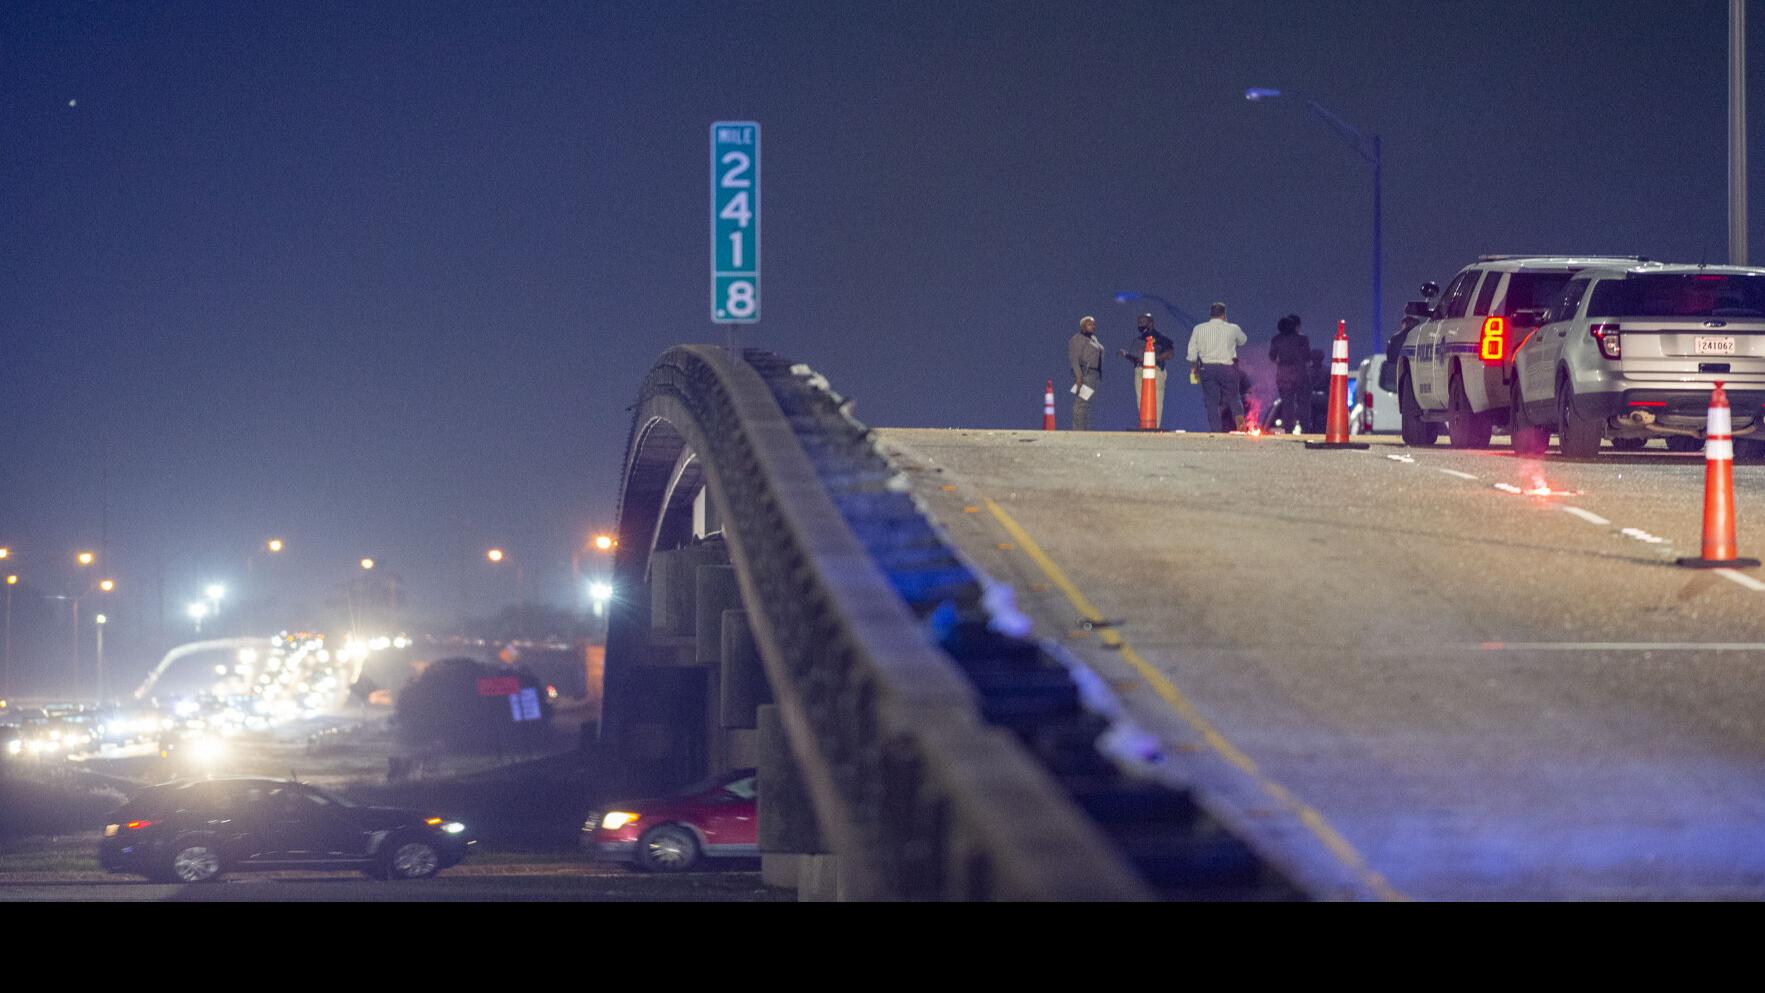 San Antonio police: Weekend's shootings were not random